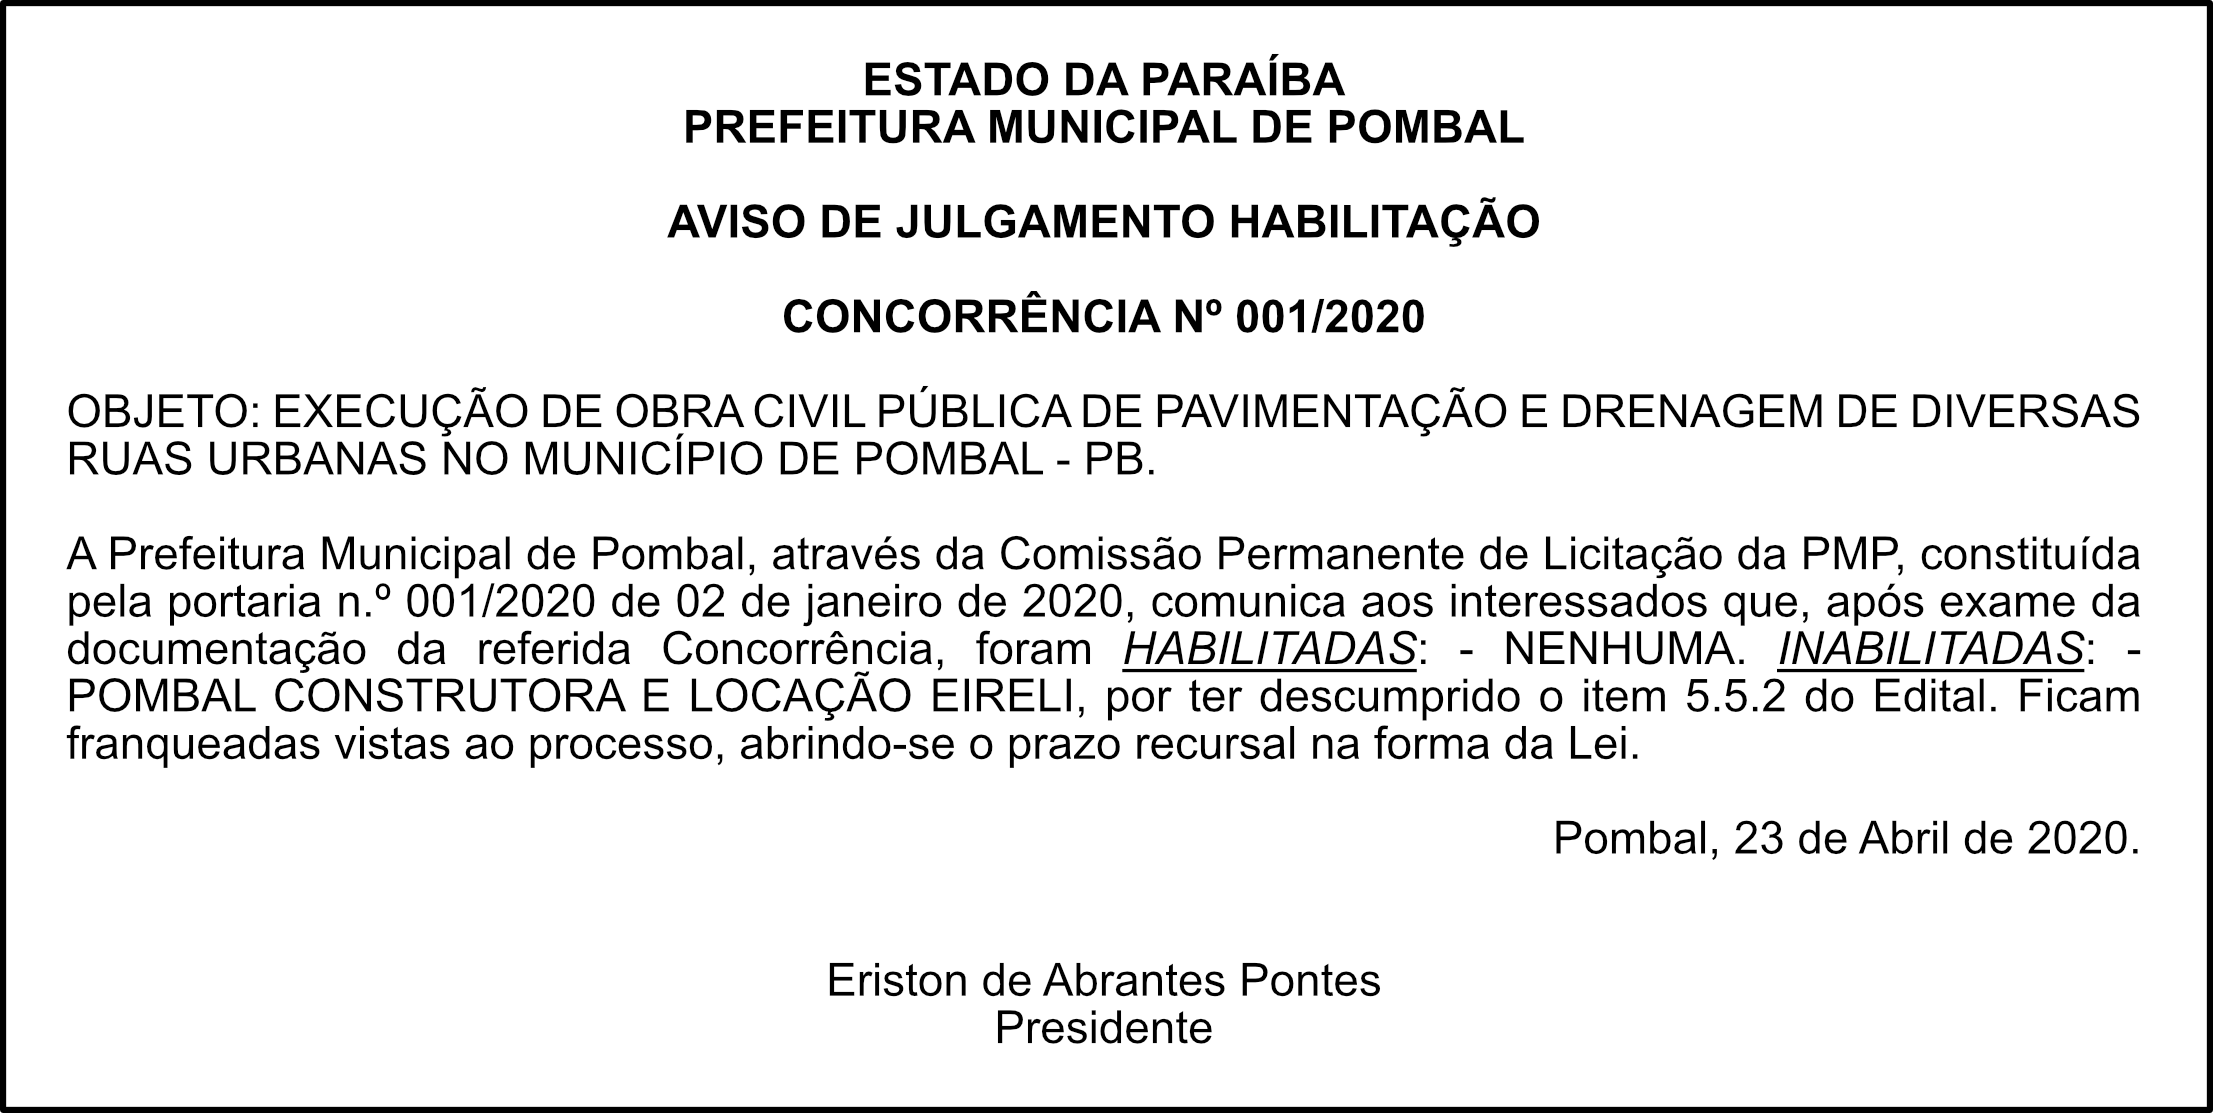 PREF. MUN. DE POMBAL – AVISO DE JULGAMENTO – HABILITAÇÃO – CONCORRÊNCIA Nº 001/2020